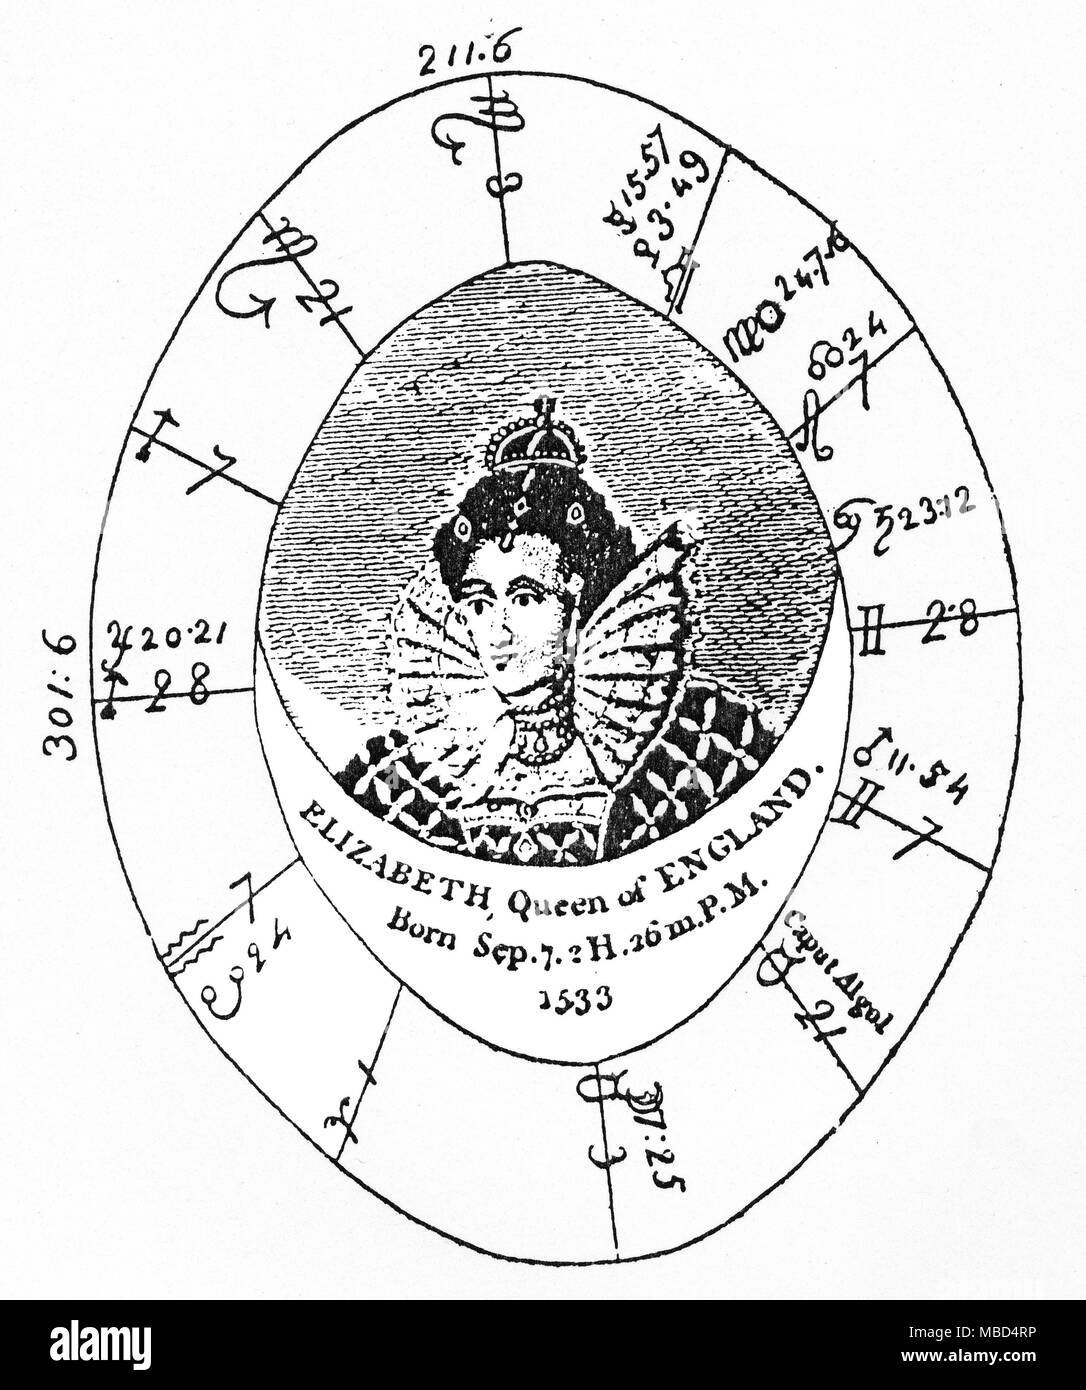 Queen Elizabeth Astrology Chart